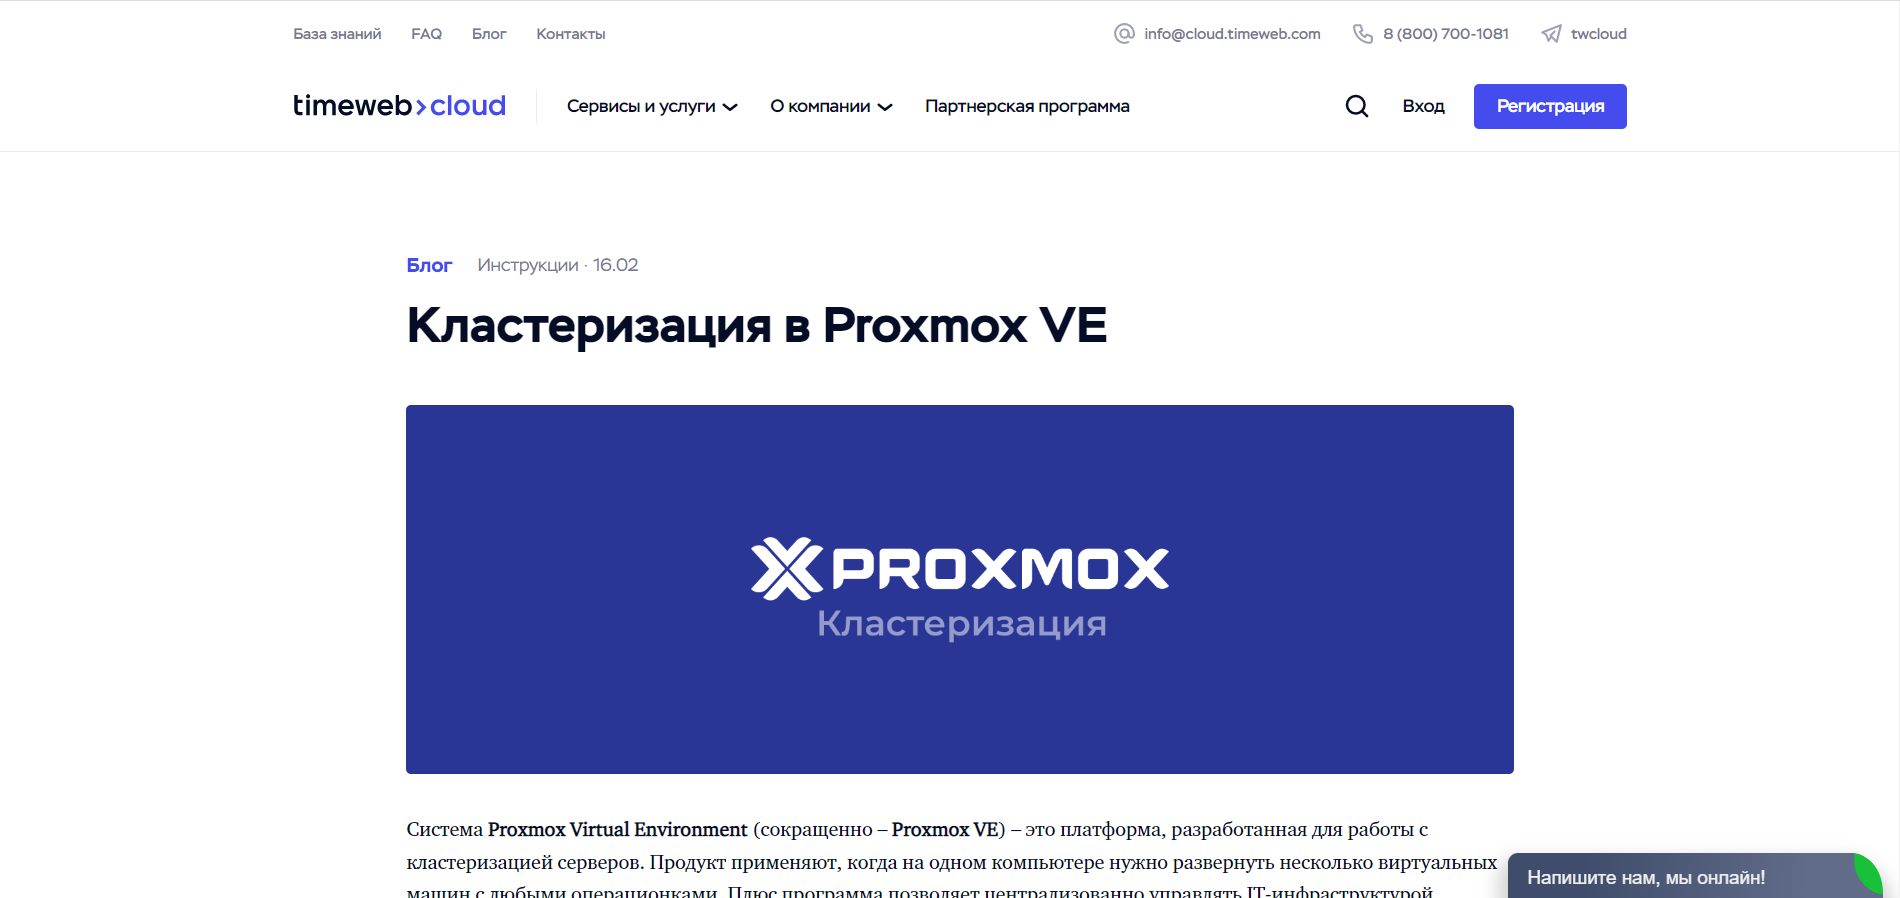 Кластеризация в Proxmox VE